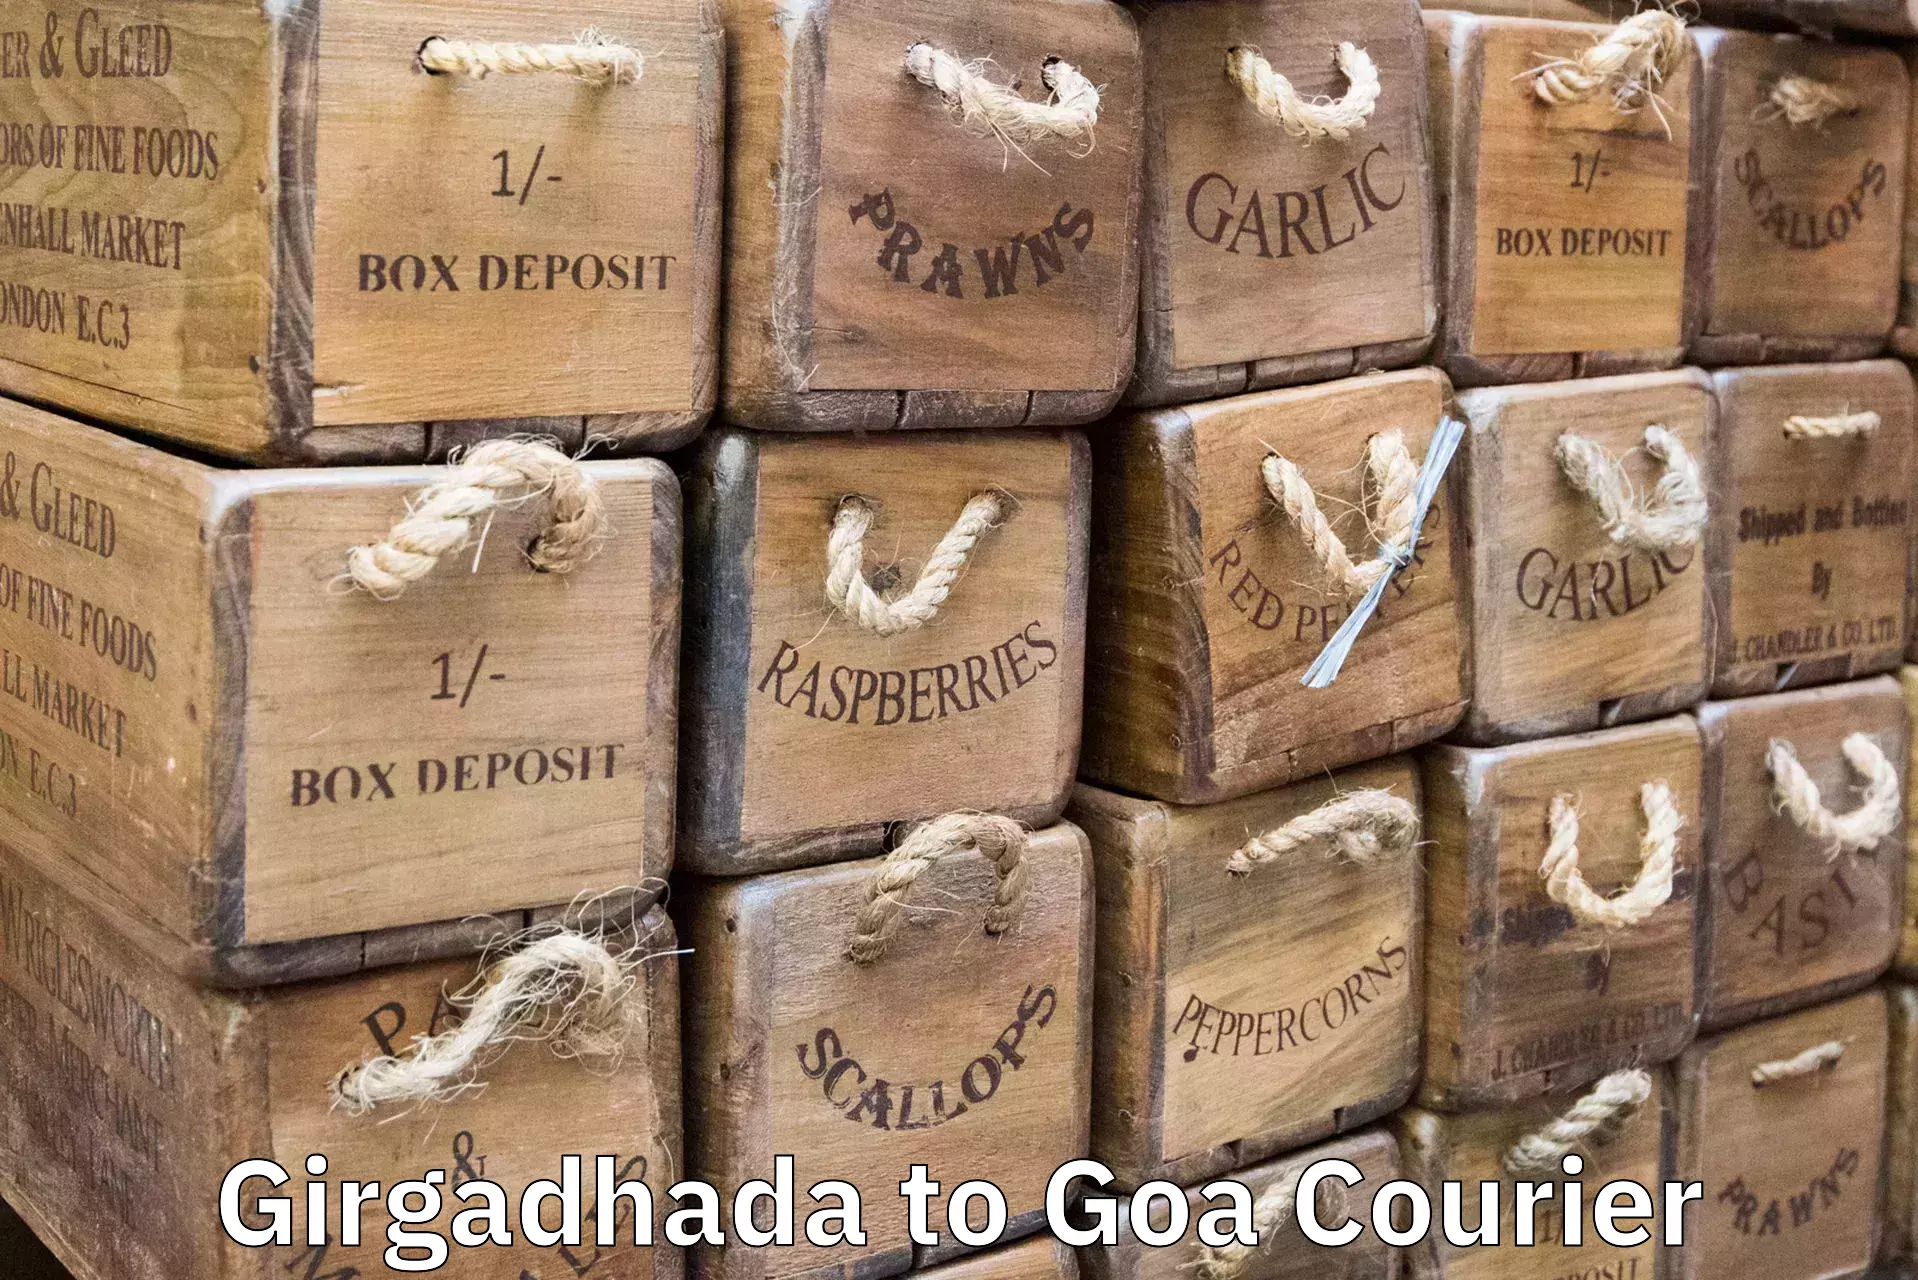 Immediate baggage courier Girgadhada to IIT Goa